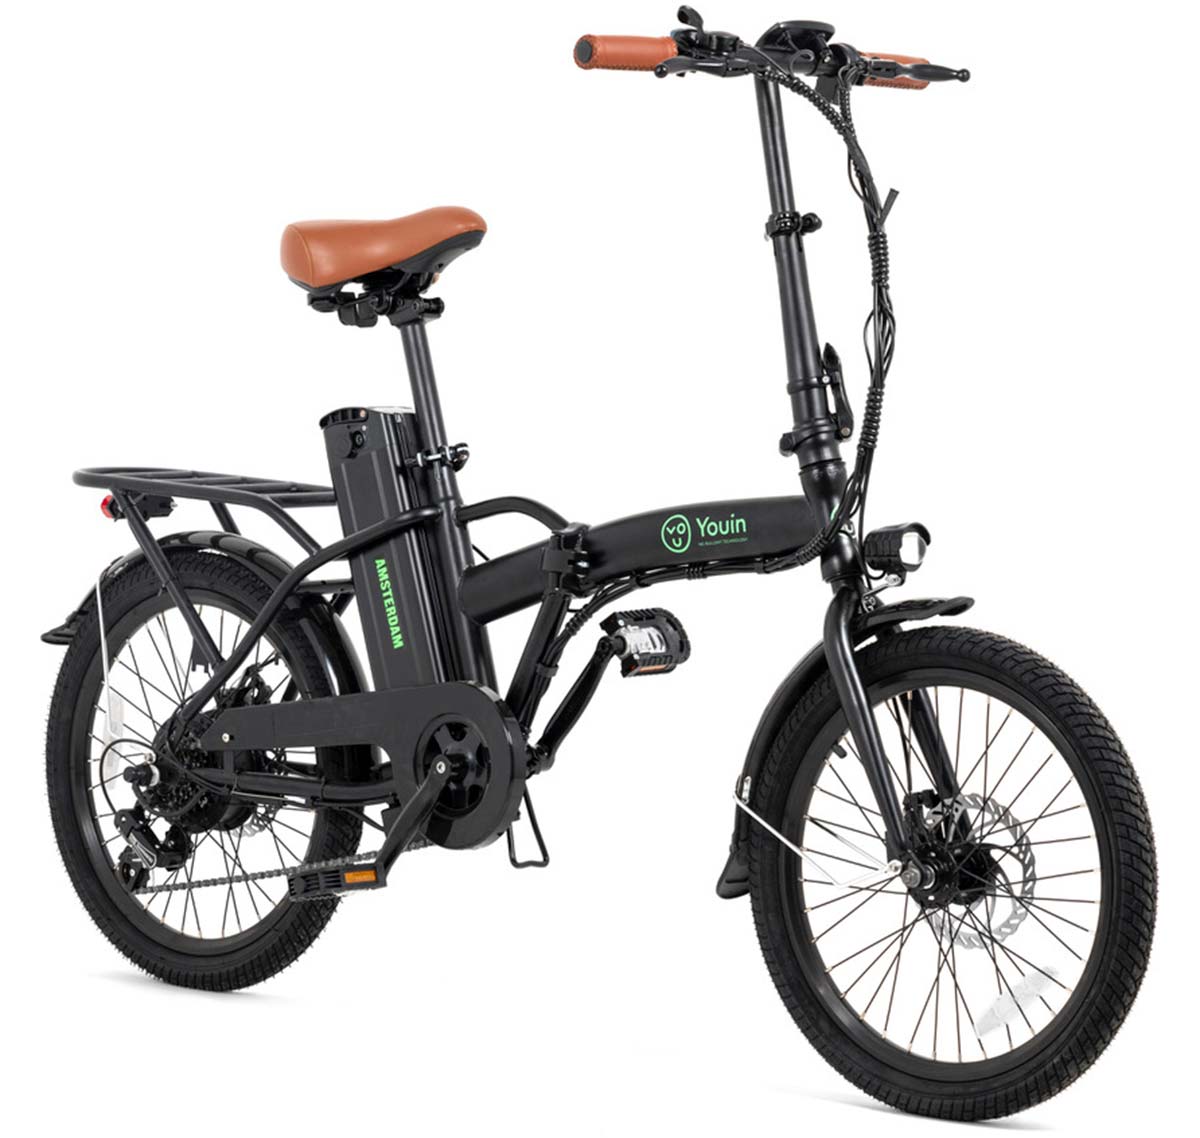 En TodoMountainBike: Youin renueva una de sus bicicletas eléctricas más vendidas, la You-Ride Amsterdam